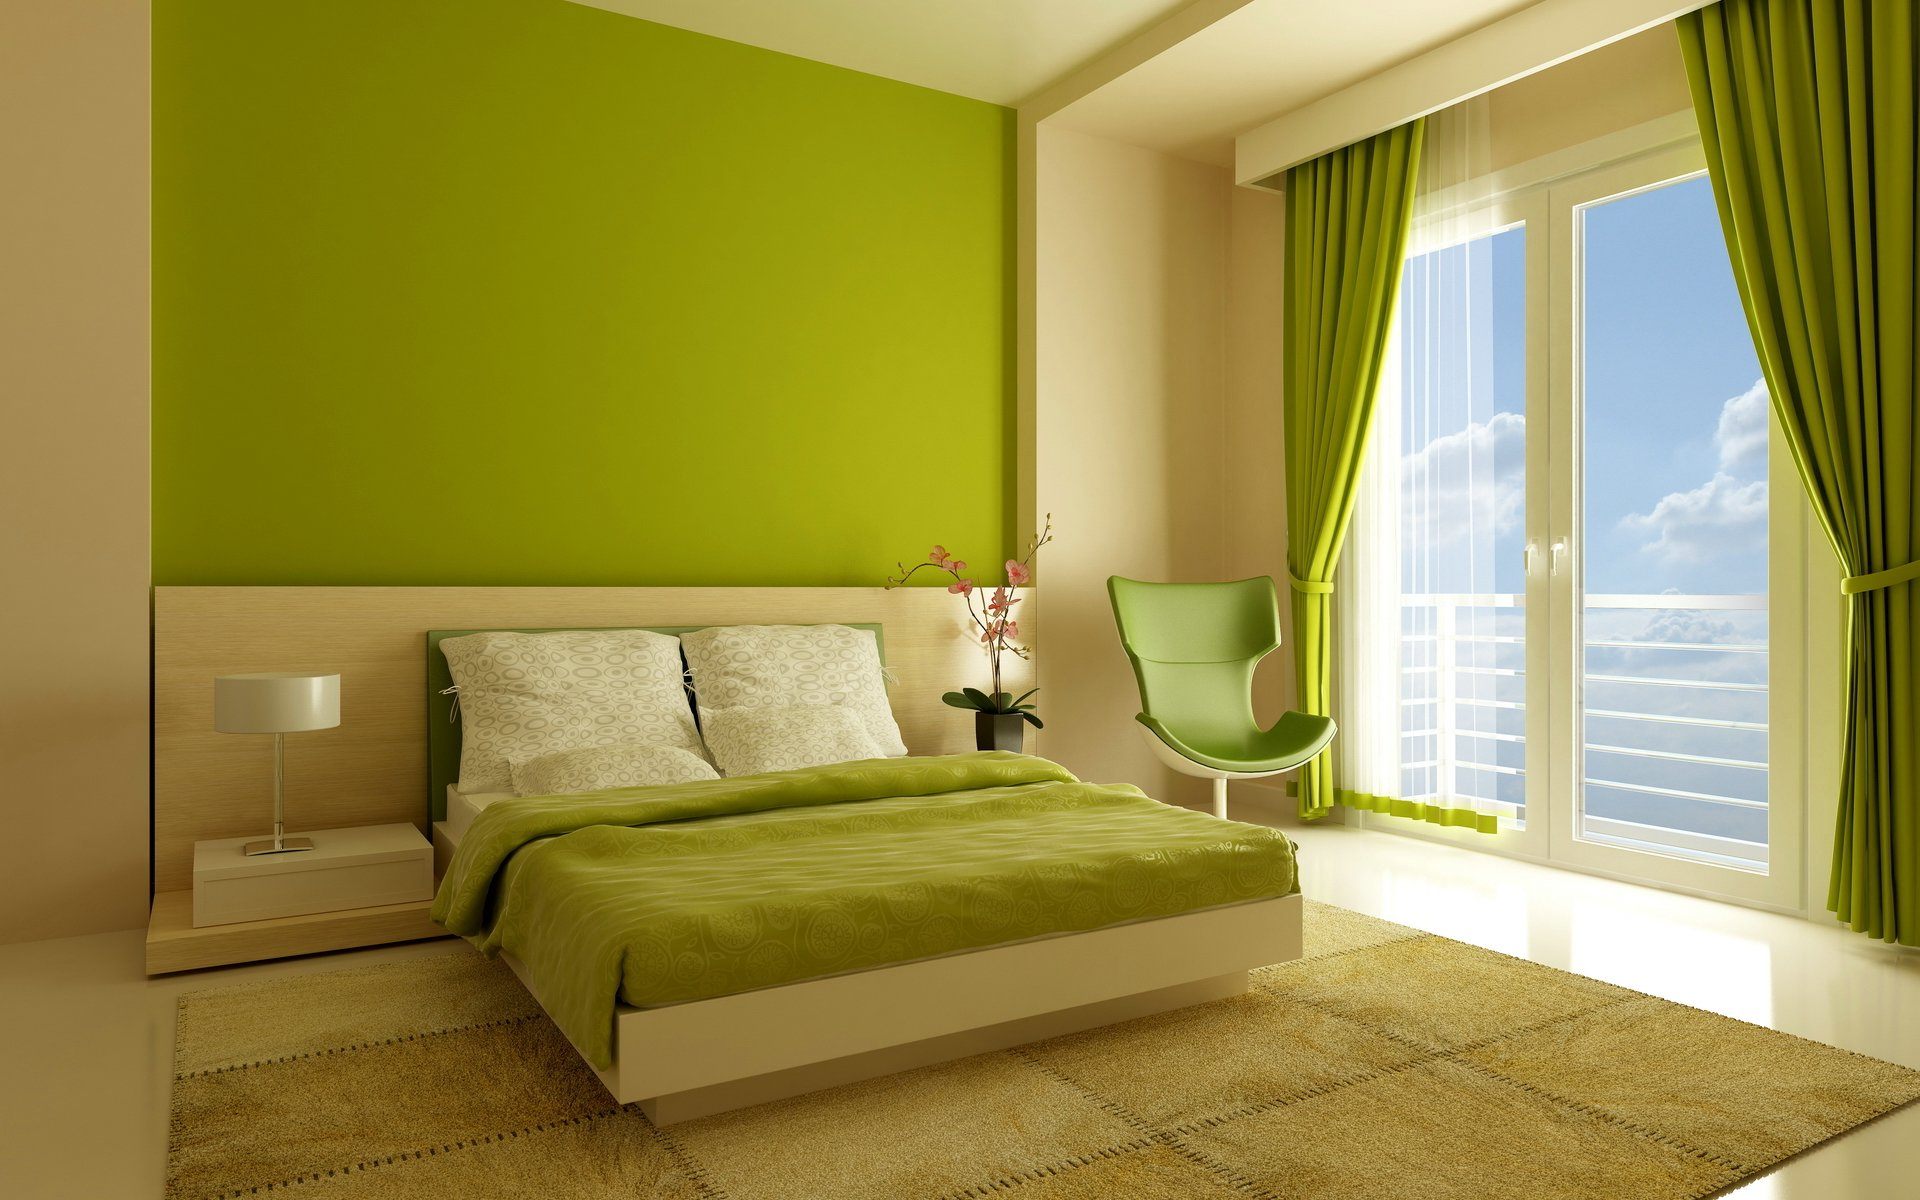 Camera da letto per gli sposi nei toni del verde